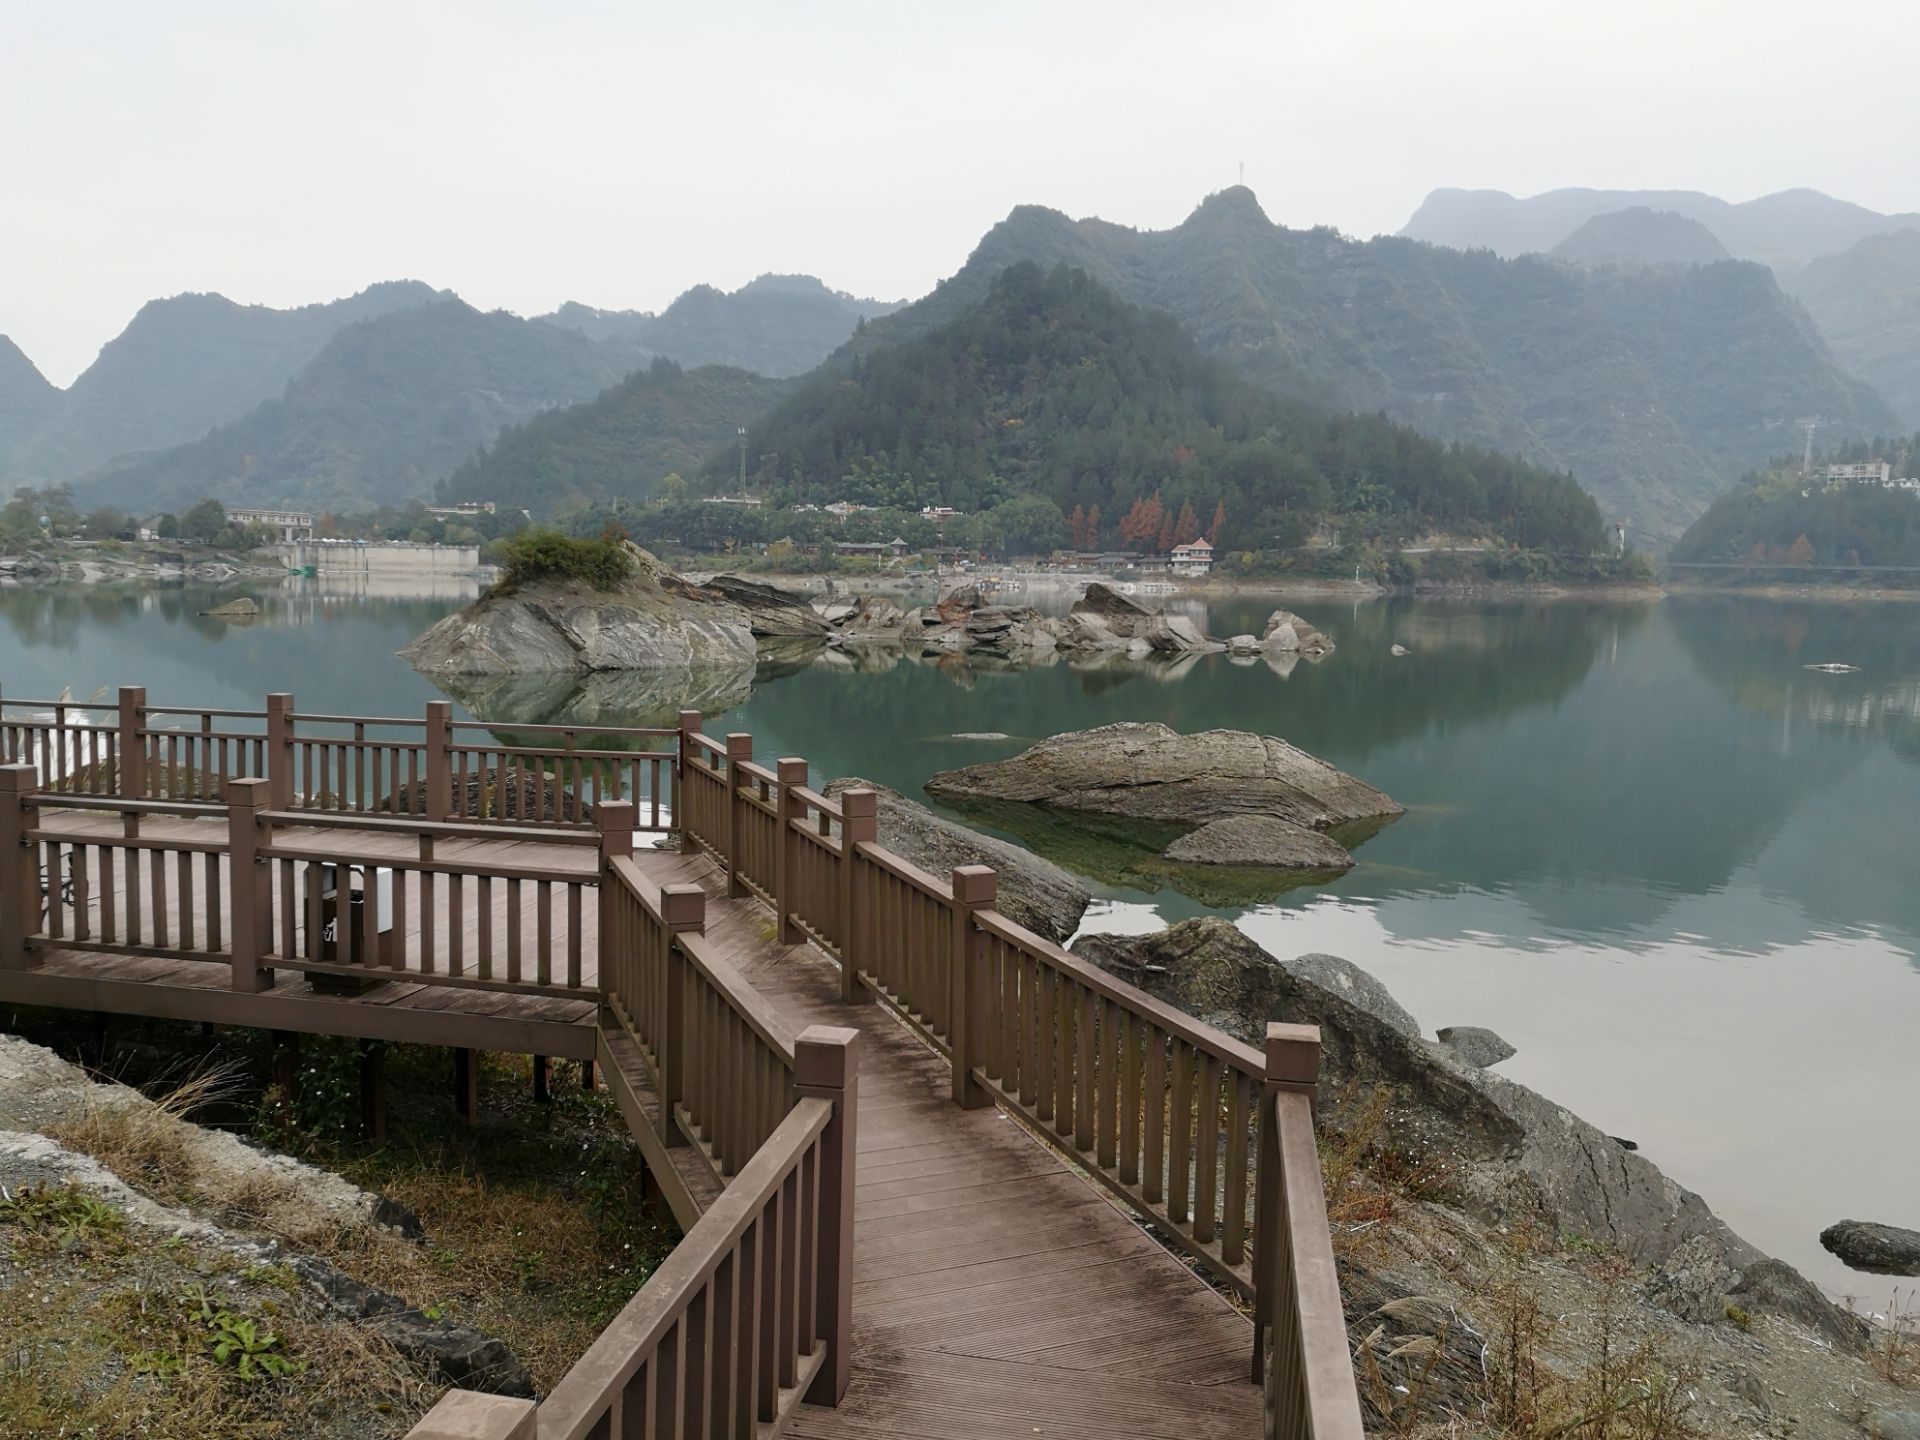 【携程攻略】重庆小南海景点,重庆的小南海是一个融山、水、岛、峡等风光于一体的高山淡水堰塞湖泊…